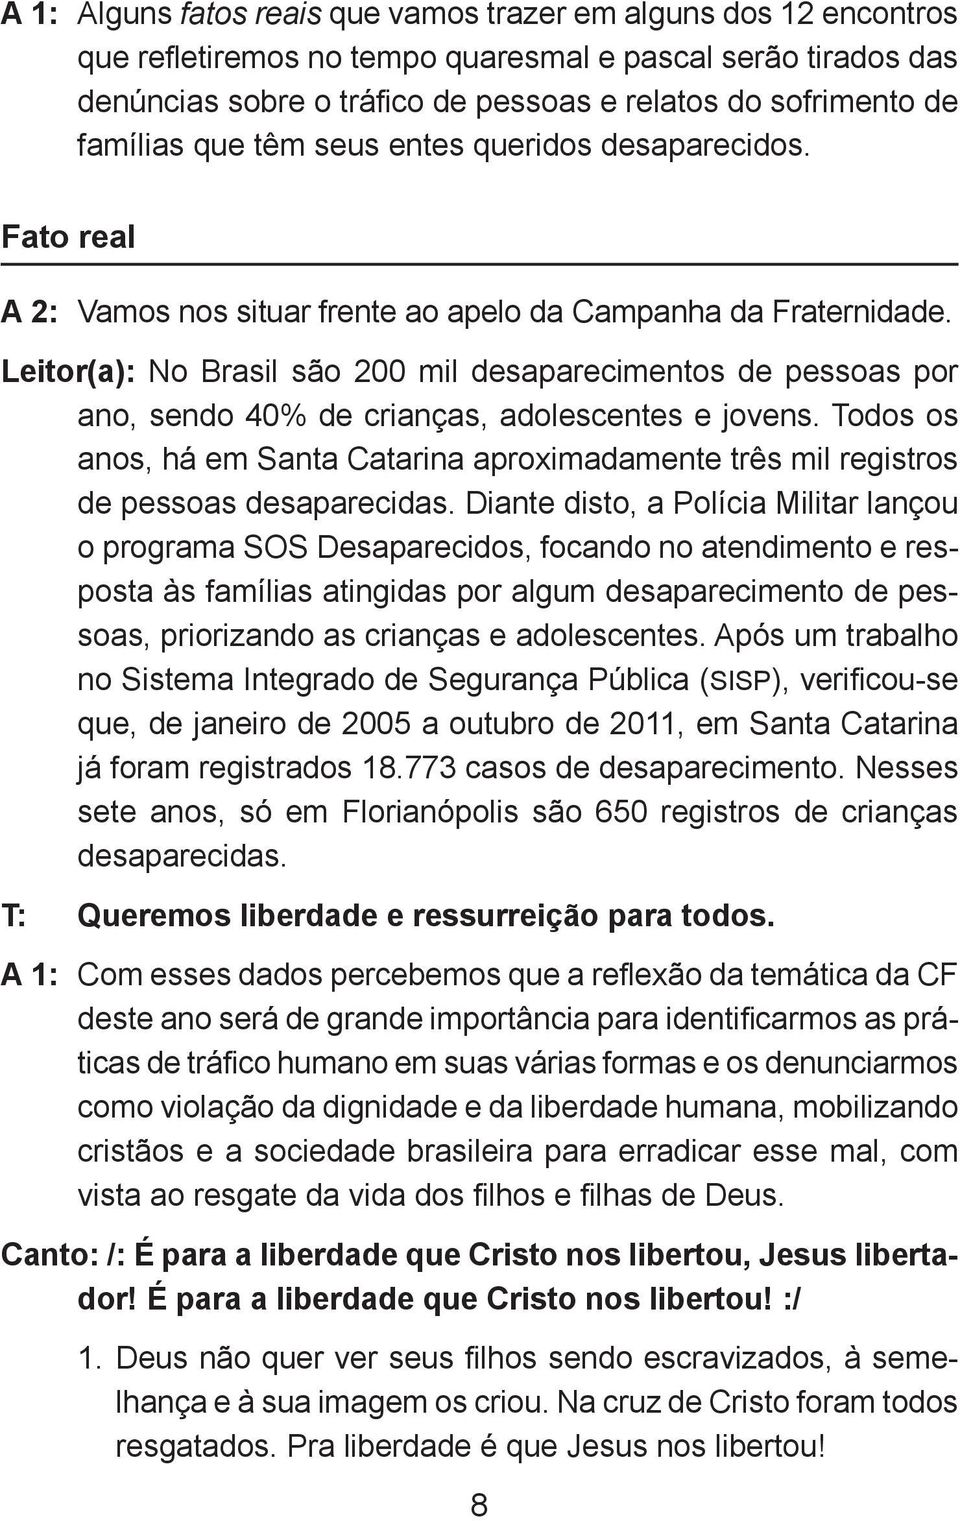 Leitor(a): No Brasil são 200 mil desaparecimentos de pessoas por ano, sendo 40% de crianças, adolescentes e jovens.